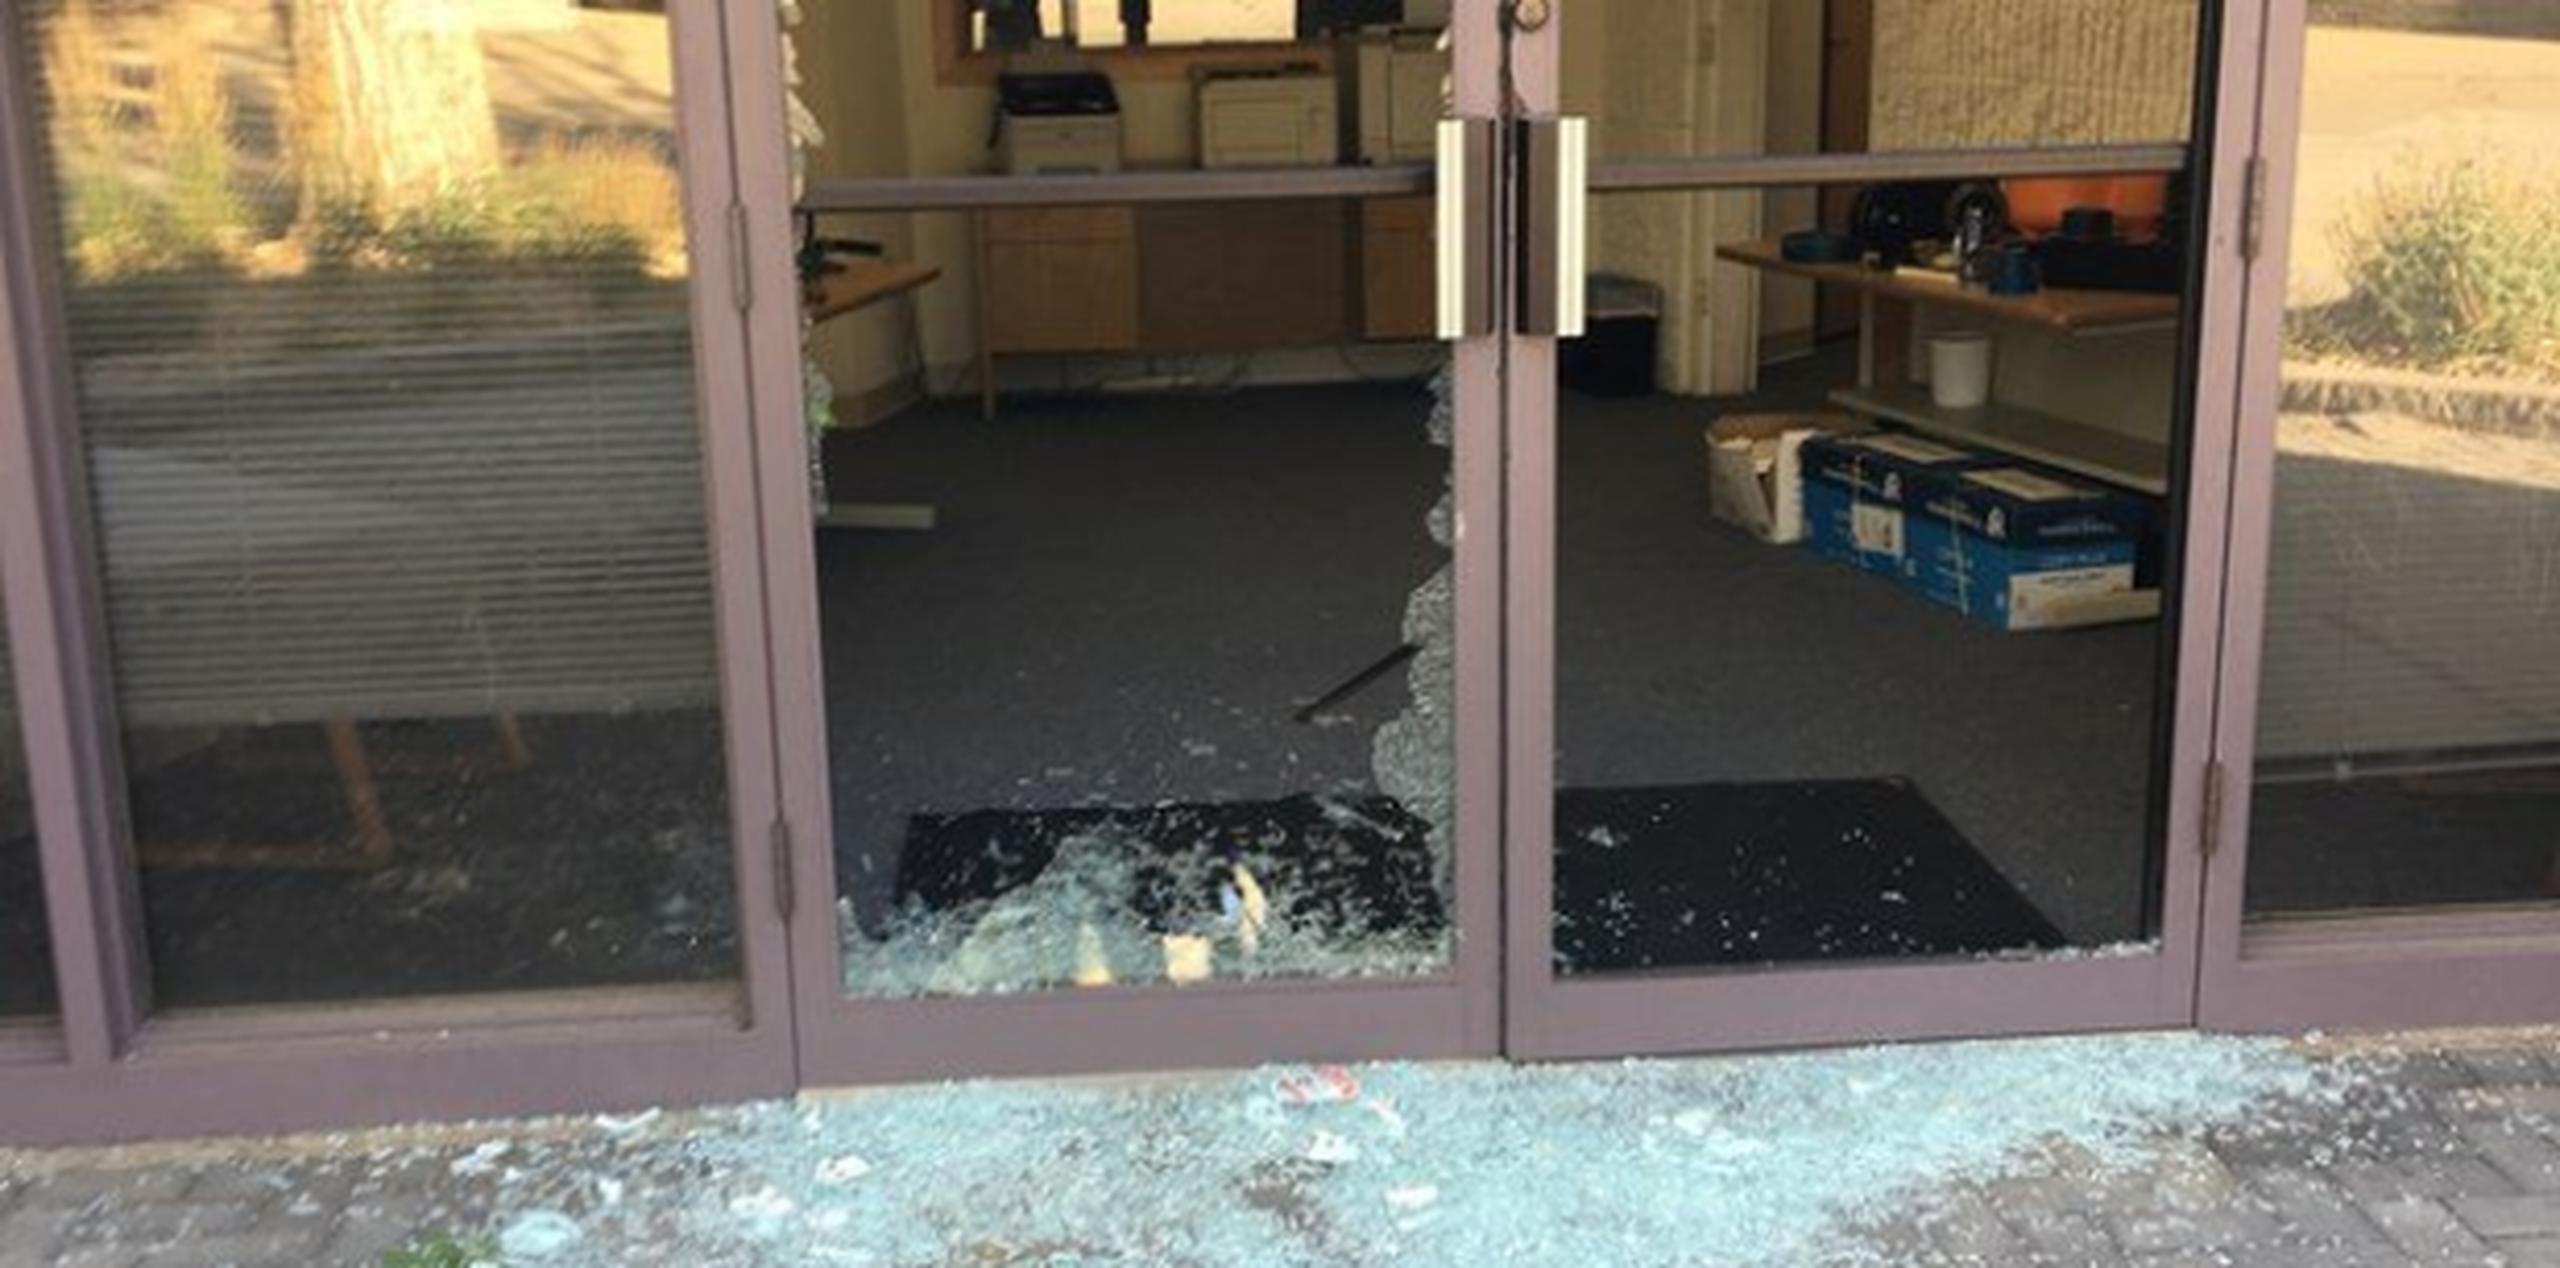 Según un empleado del negocio, había vidrios rotos por todos lados. (Fox Denver)